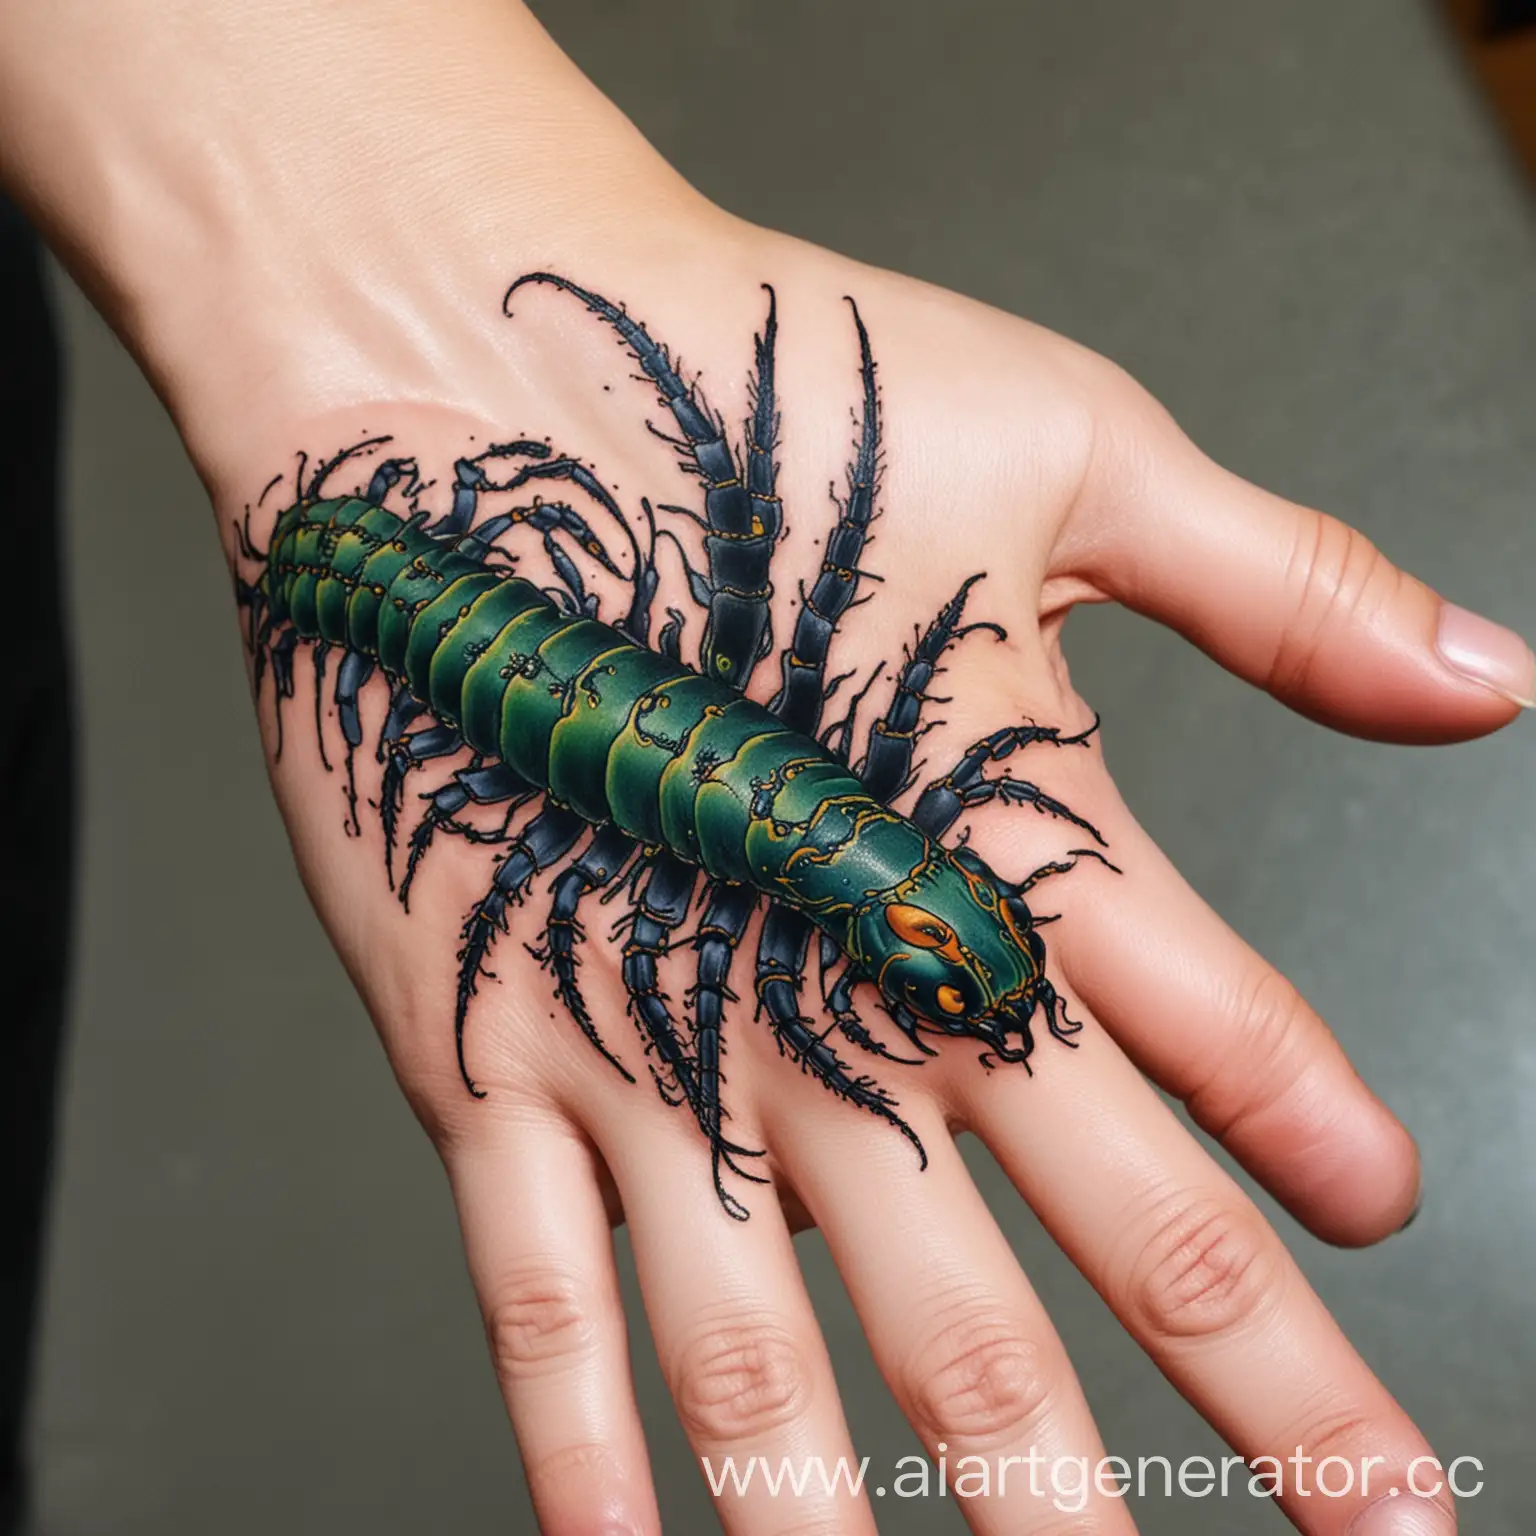 Hand-Tattoo-of-Intricate-Centipede-Design